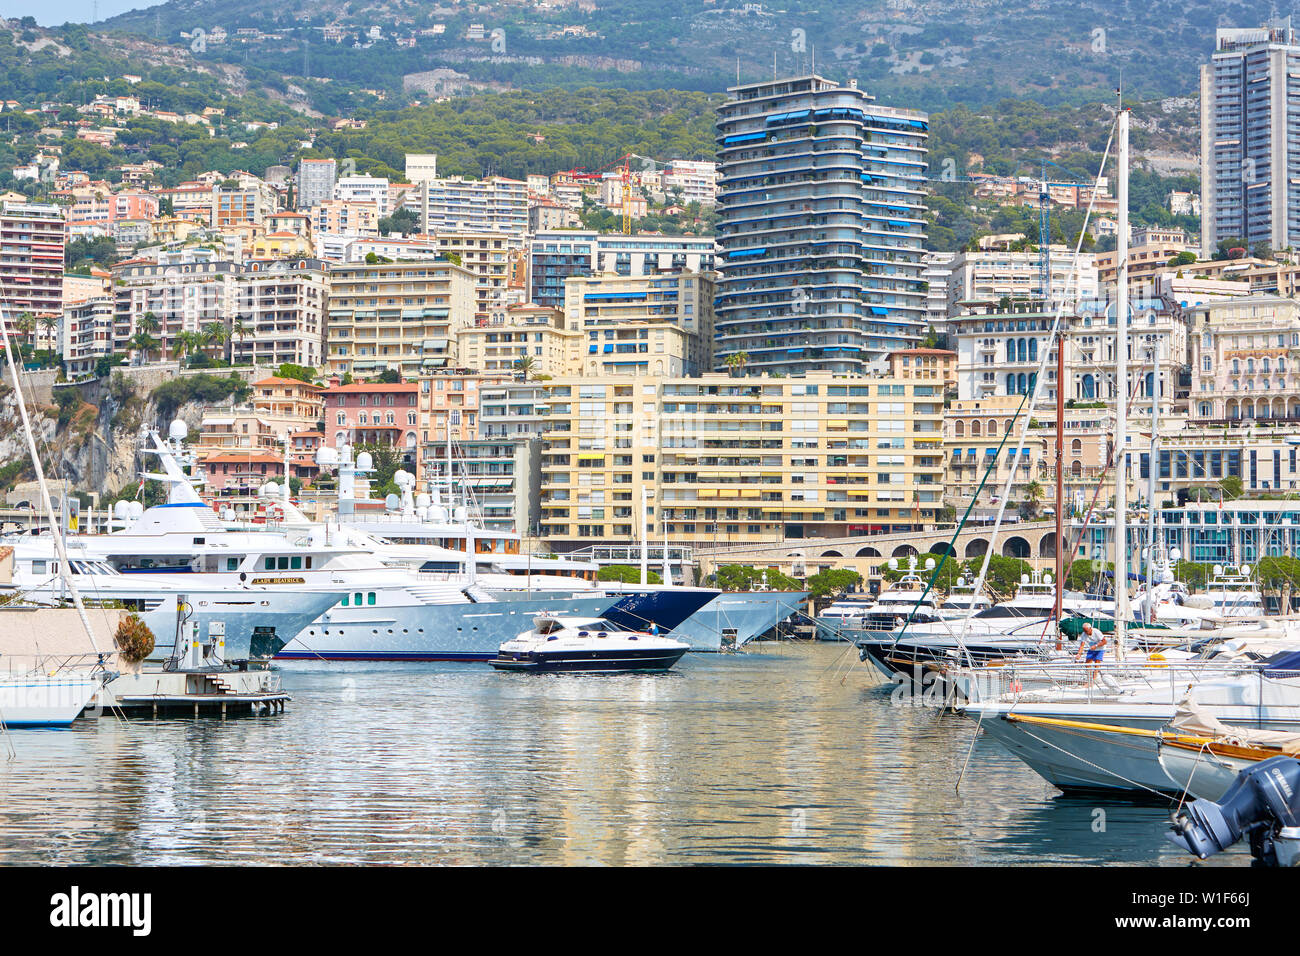 MONTE CARLO, Monaco - Agosto 20, 2016: puerto de Monte Carlo con barcos y yates de lujo, fondo de la ciudad en un día de verano en Montecarlo, Mónaco. Foto de stock